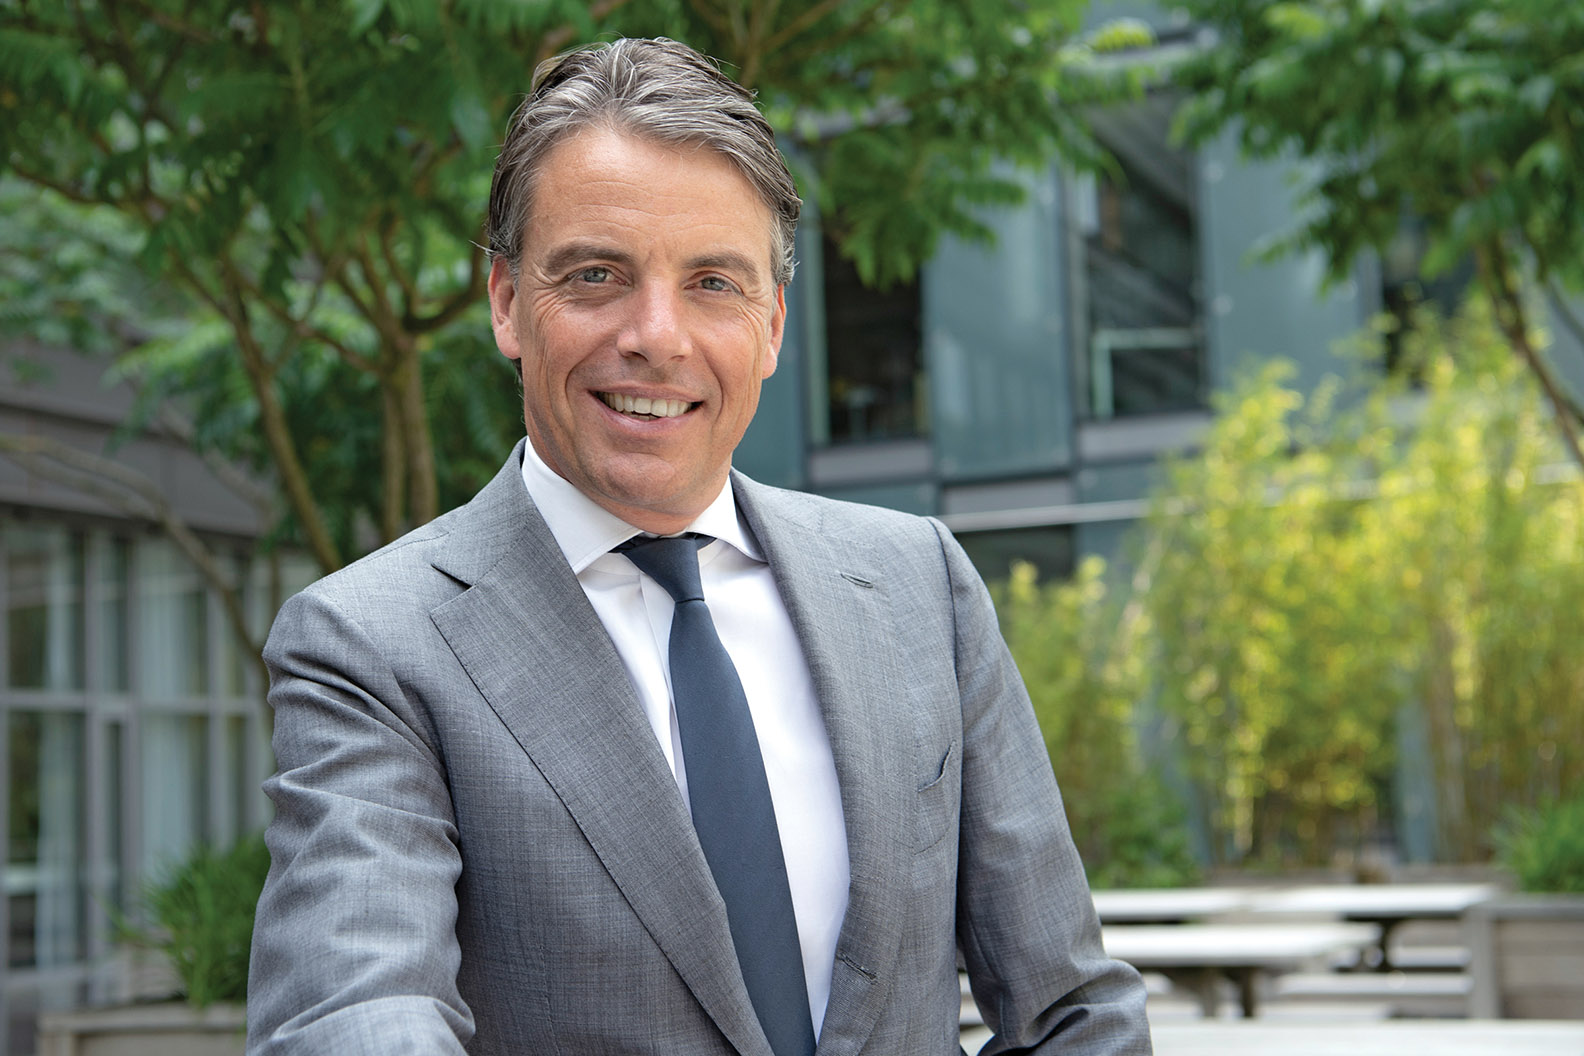 Bram Linnartz, Managing Partner of Loyens & Loeff